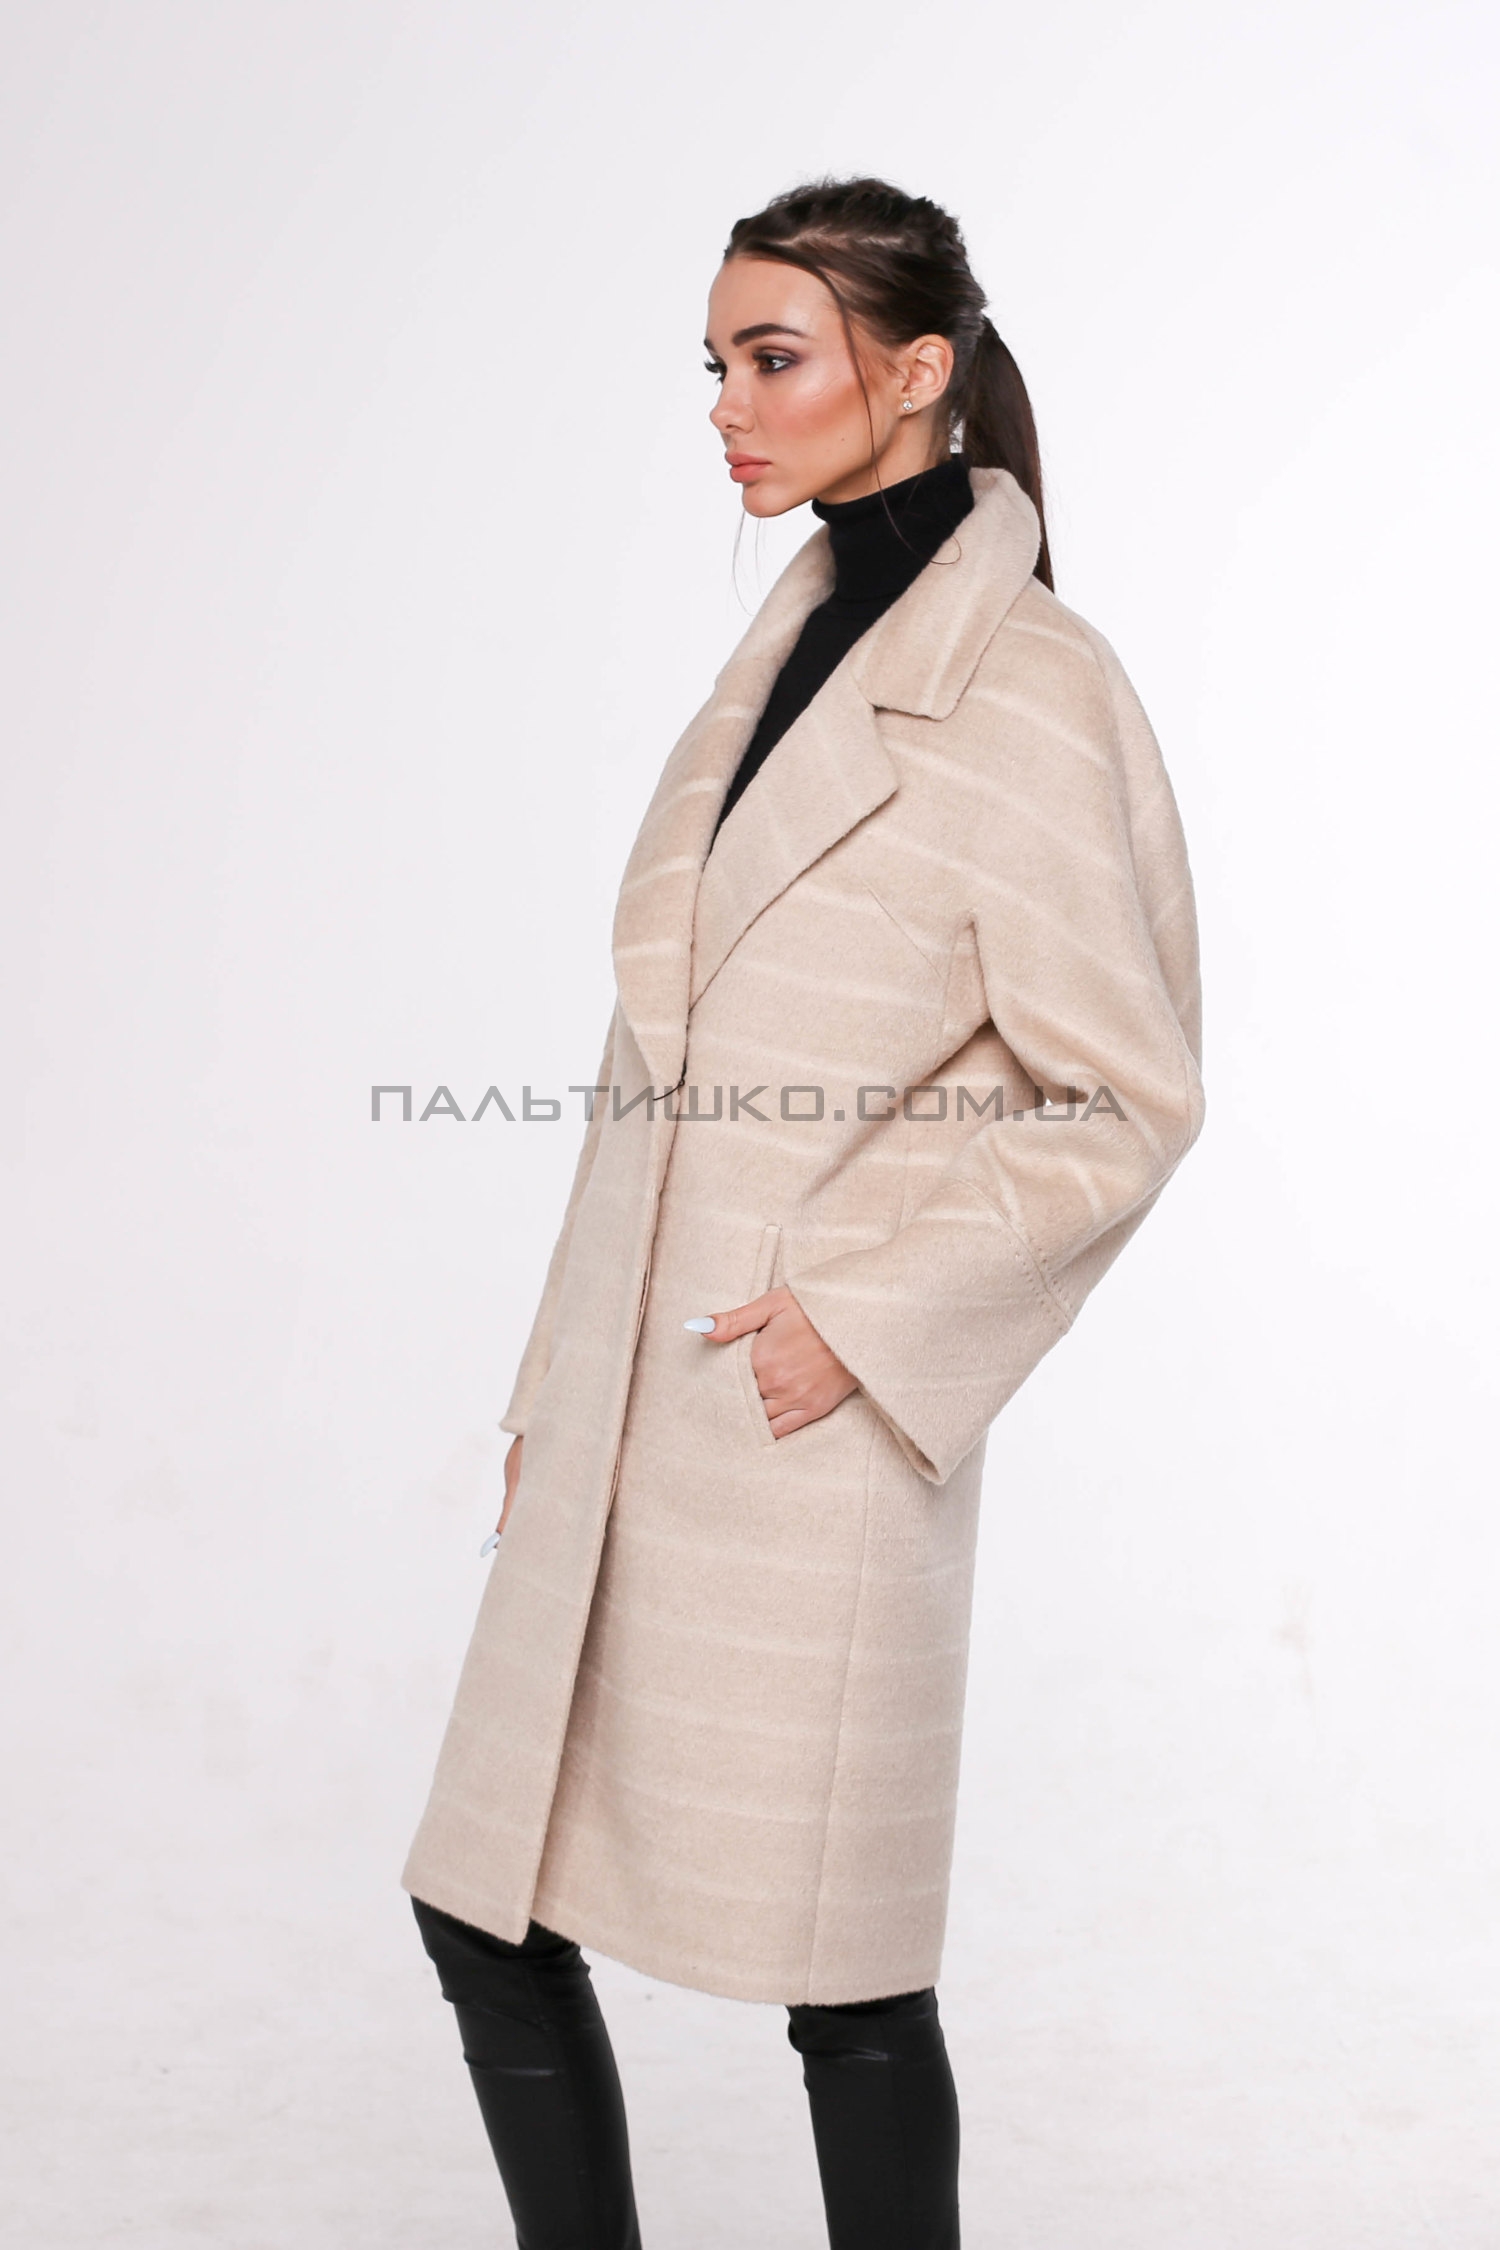  Жіноче пальто № 119